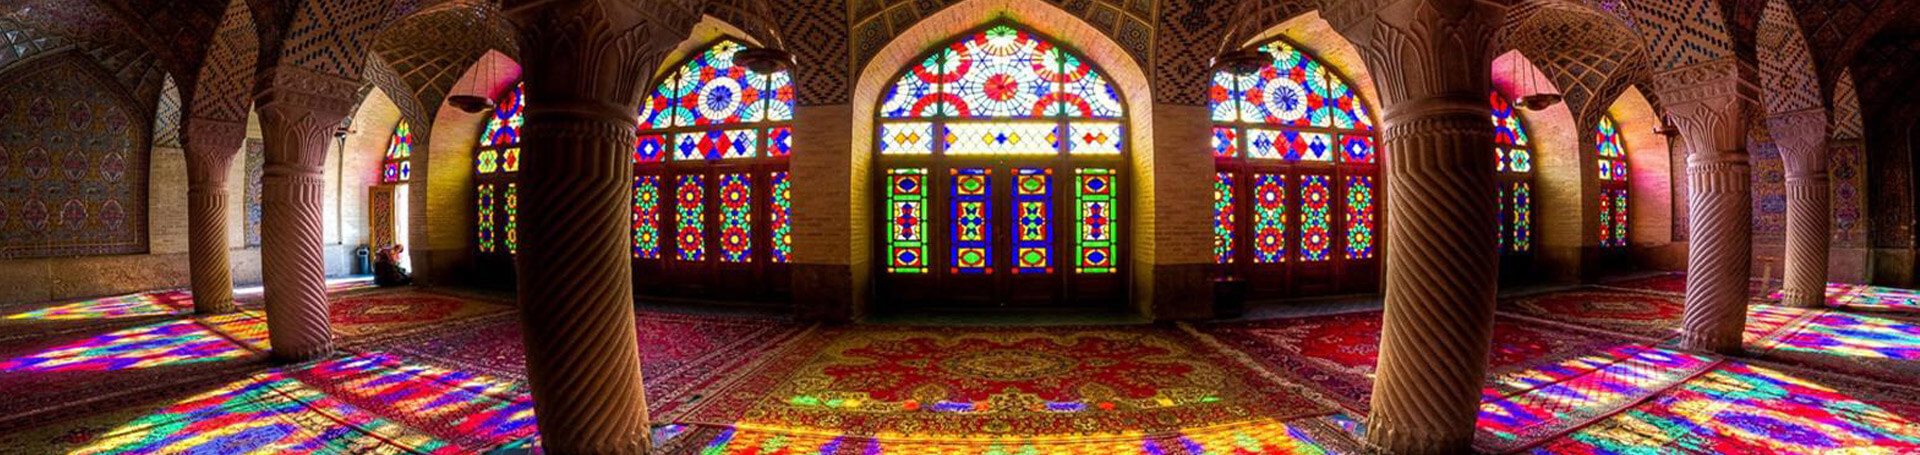 تور ارزان شیراز